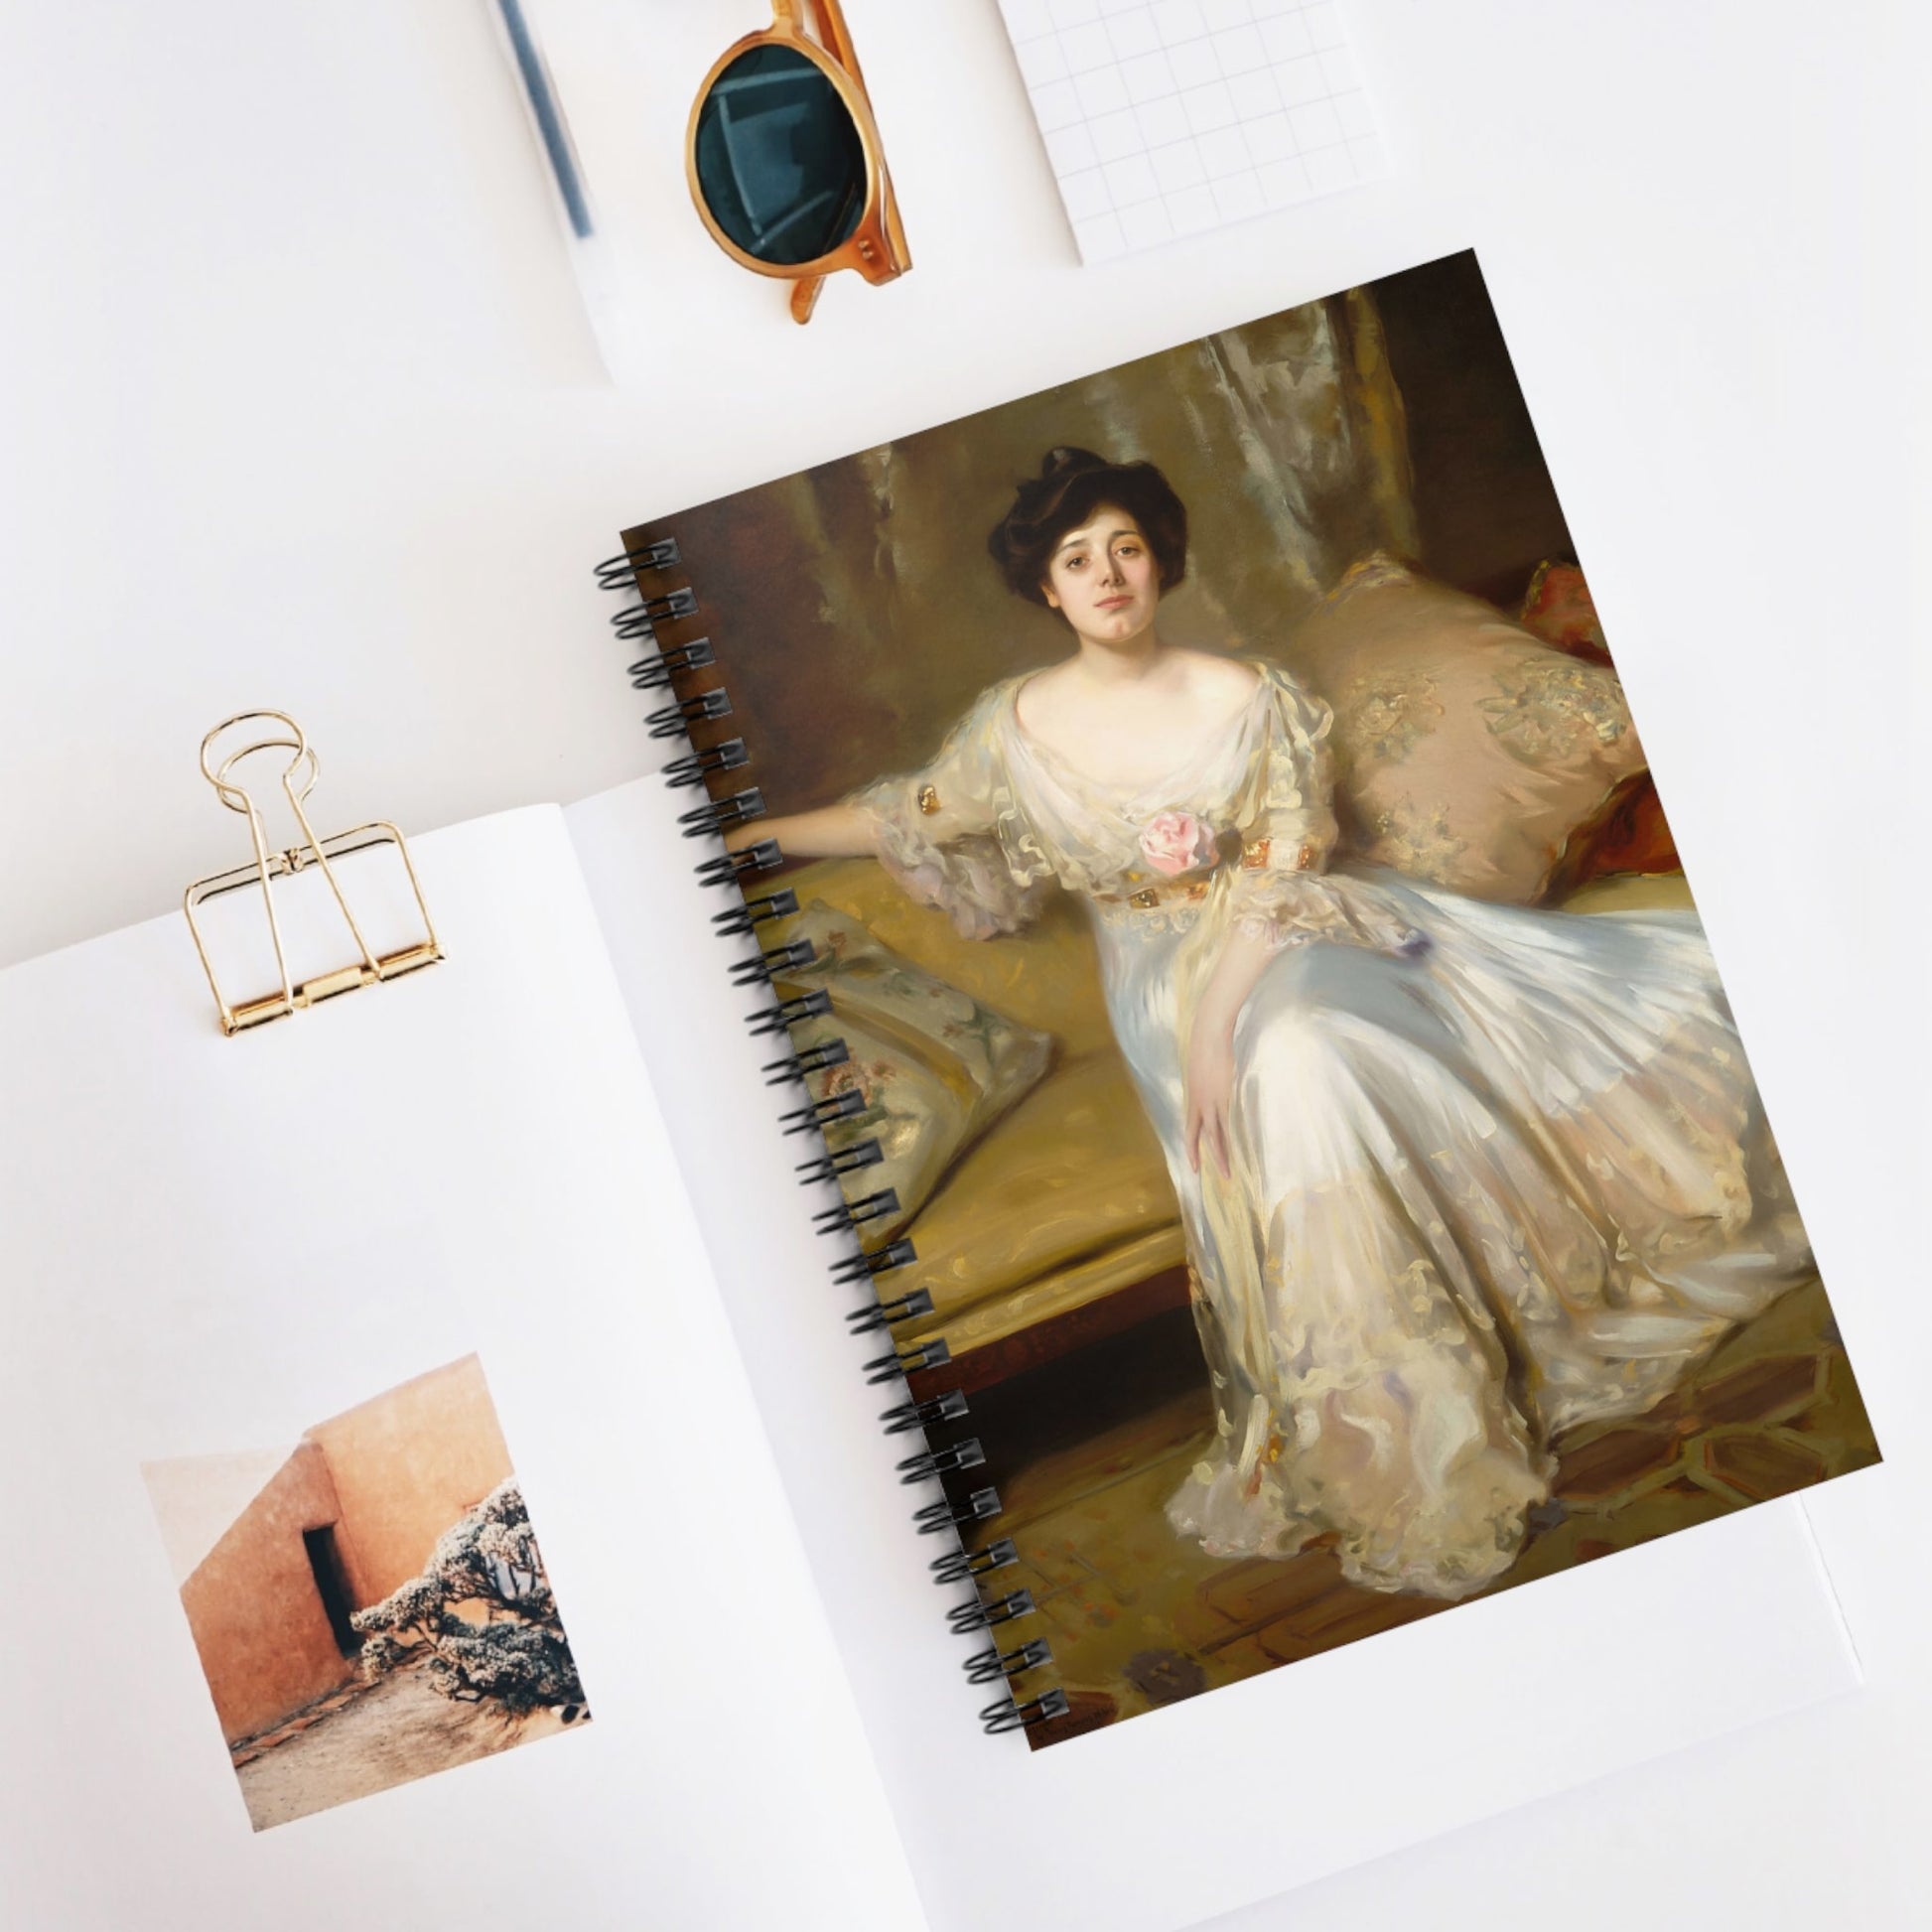 Victorian Portrait Spiral Notebook Displayed on Desk